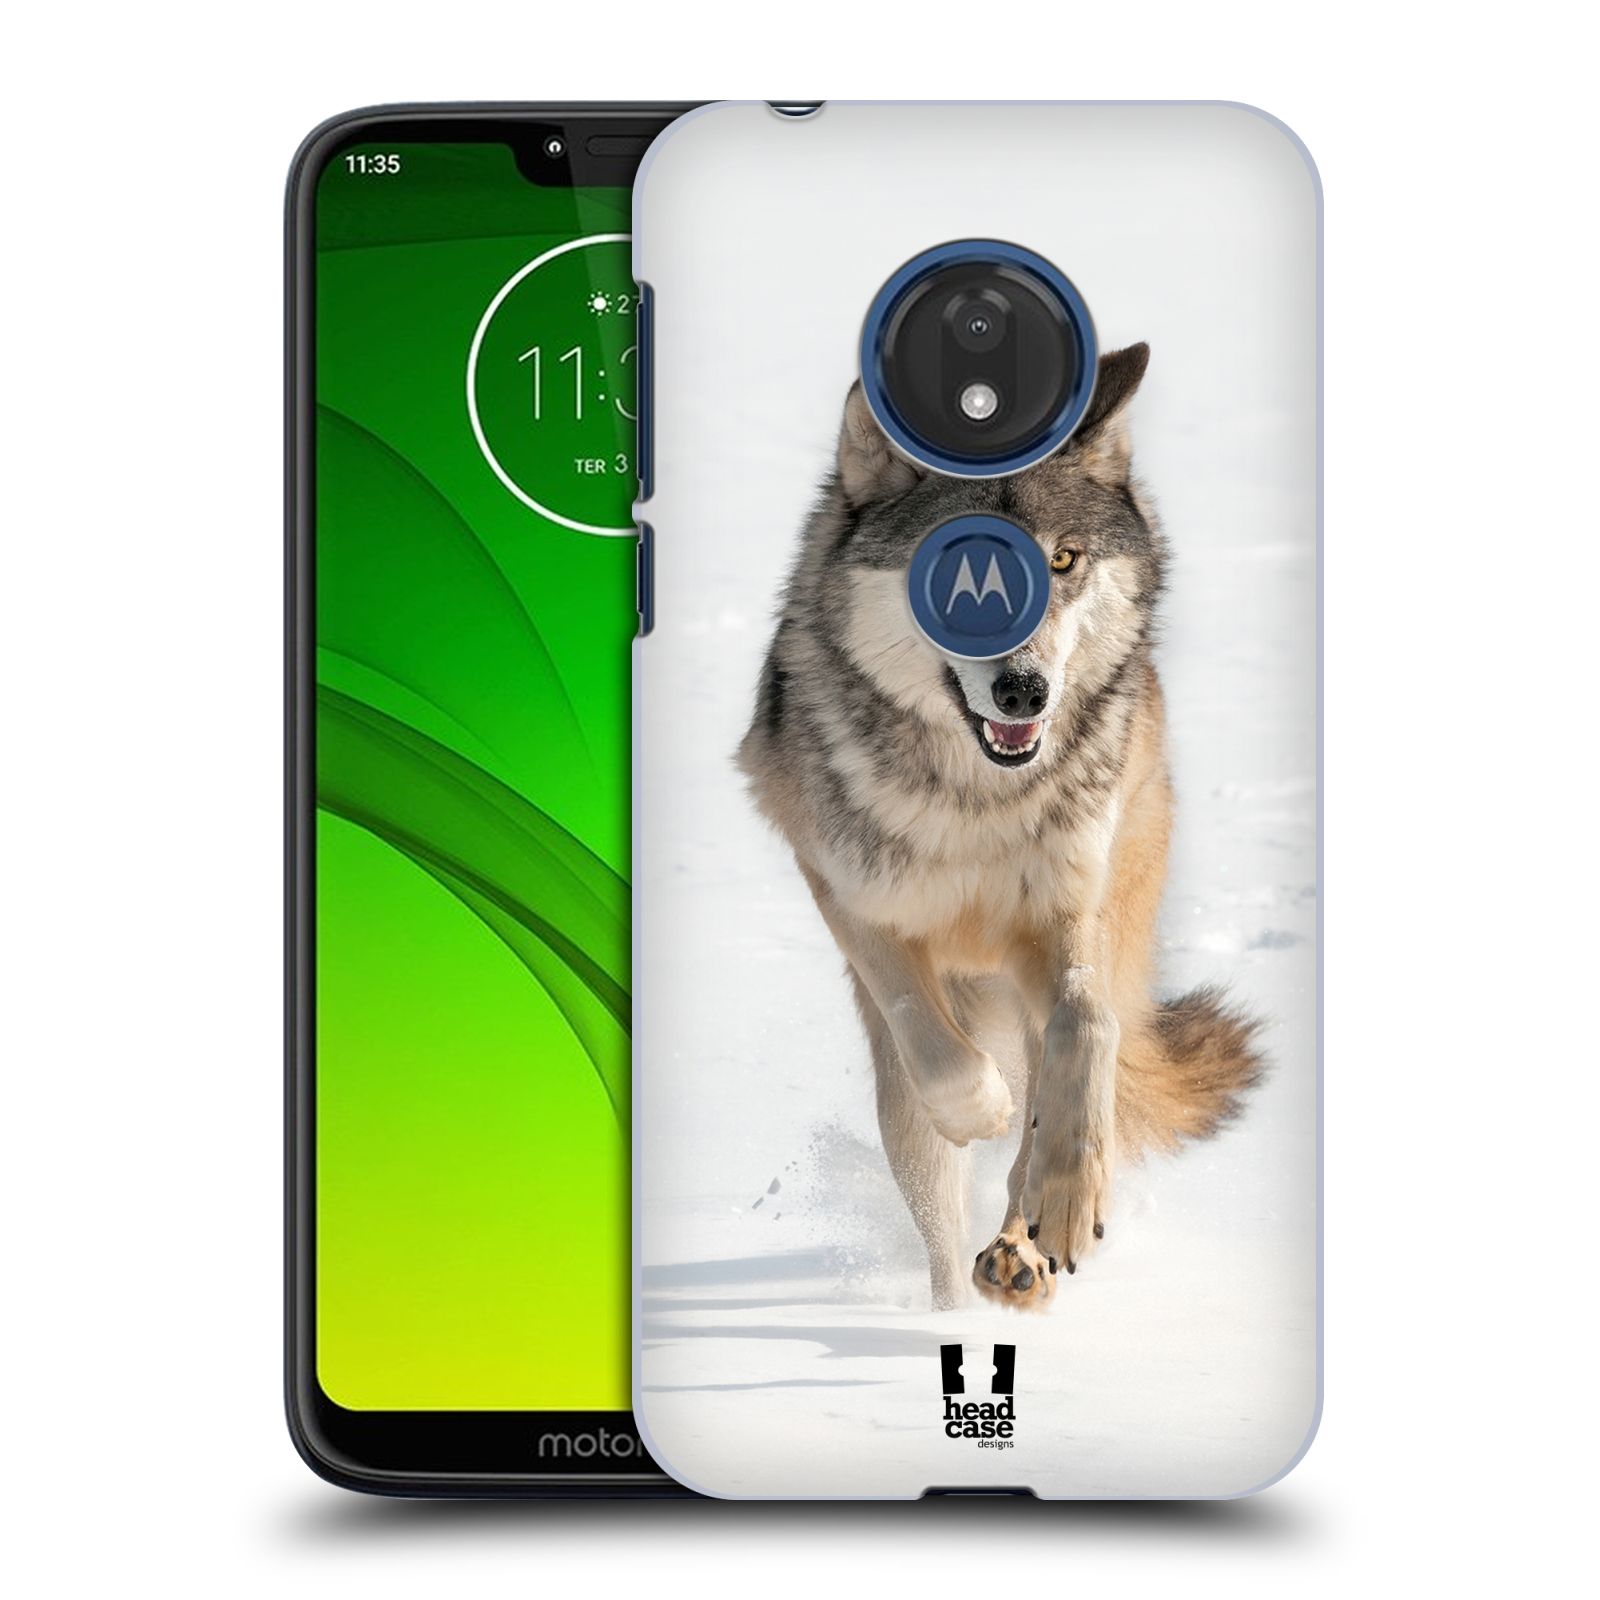 Pouzdro na mobil Motorola Moto G7 Play vzor Divočina, Divoký život a zvířata foto BĚŽÍCÍ VLK